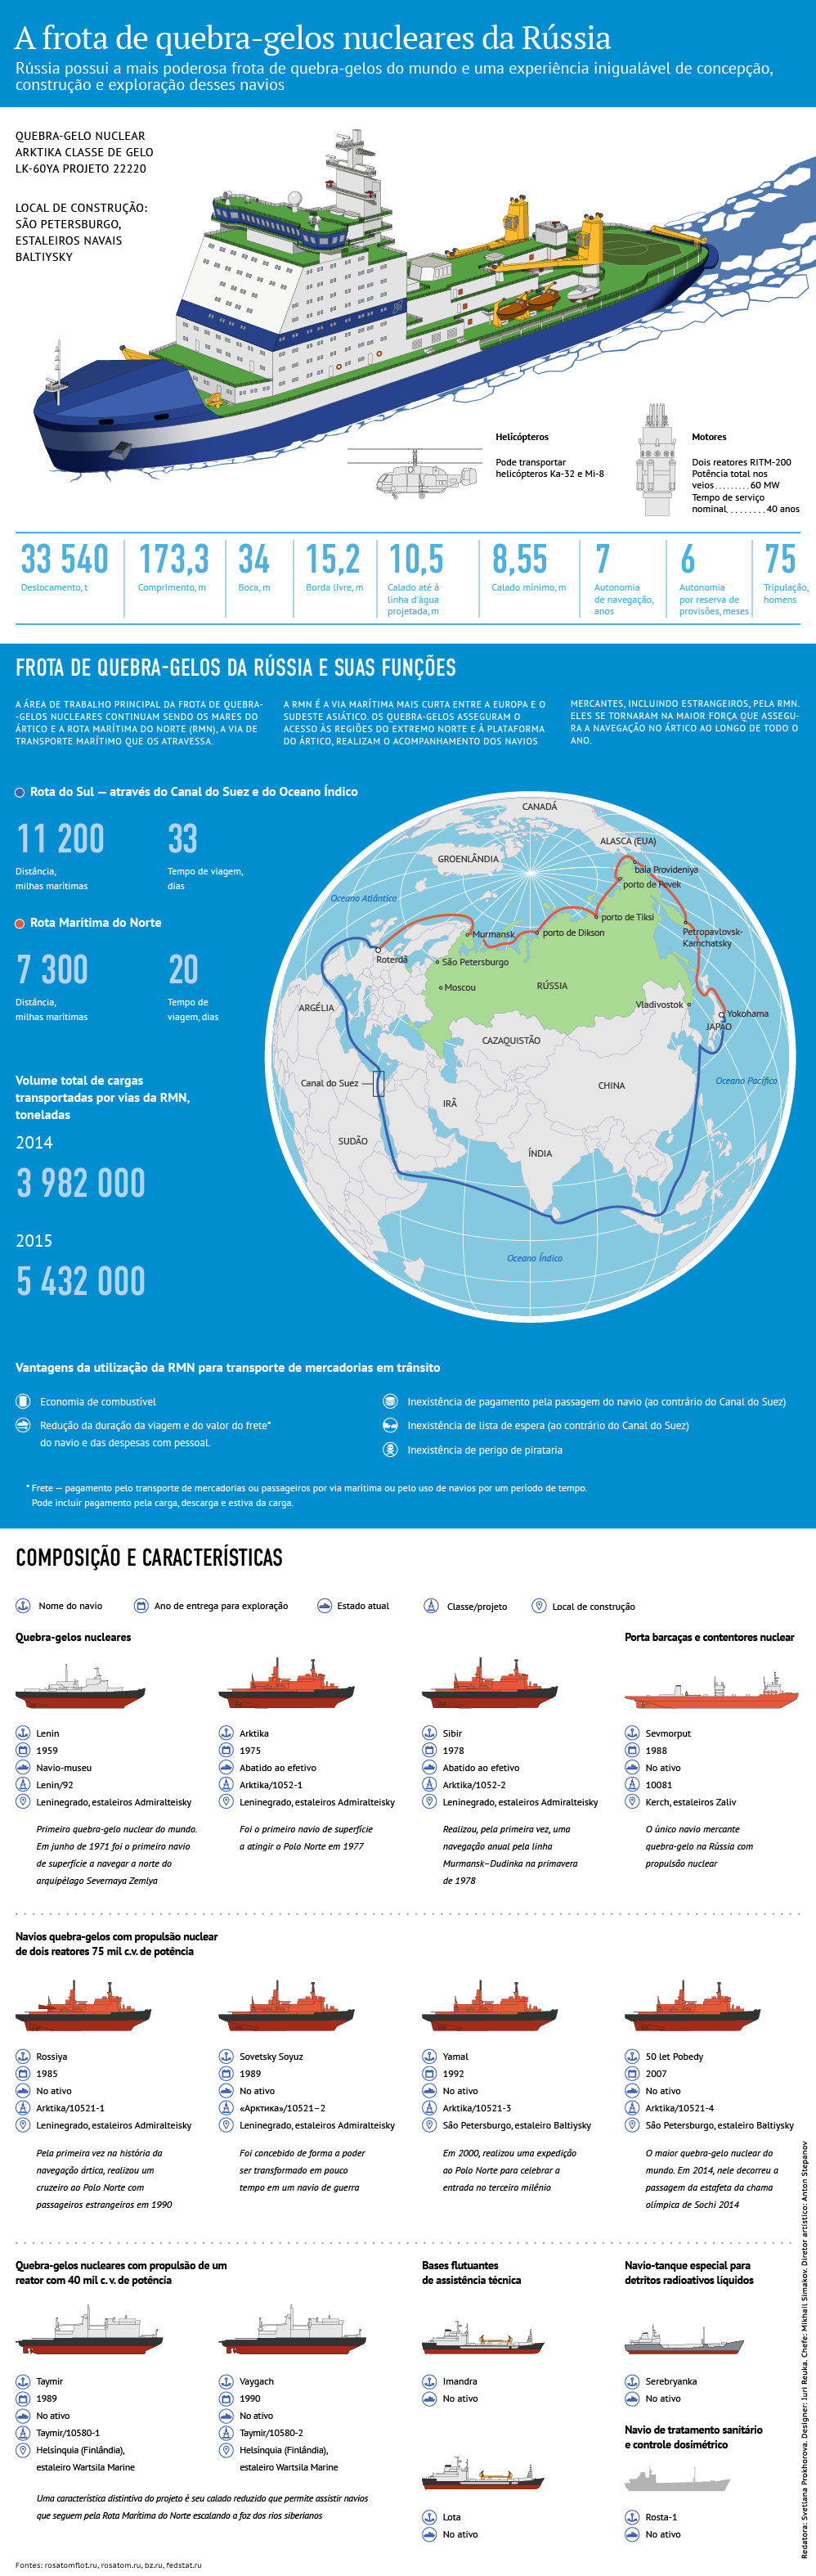 Arktika, o maior quebra-gelo nuclear no mundo - Sputnik Brasil